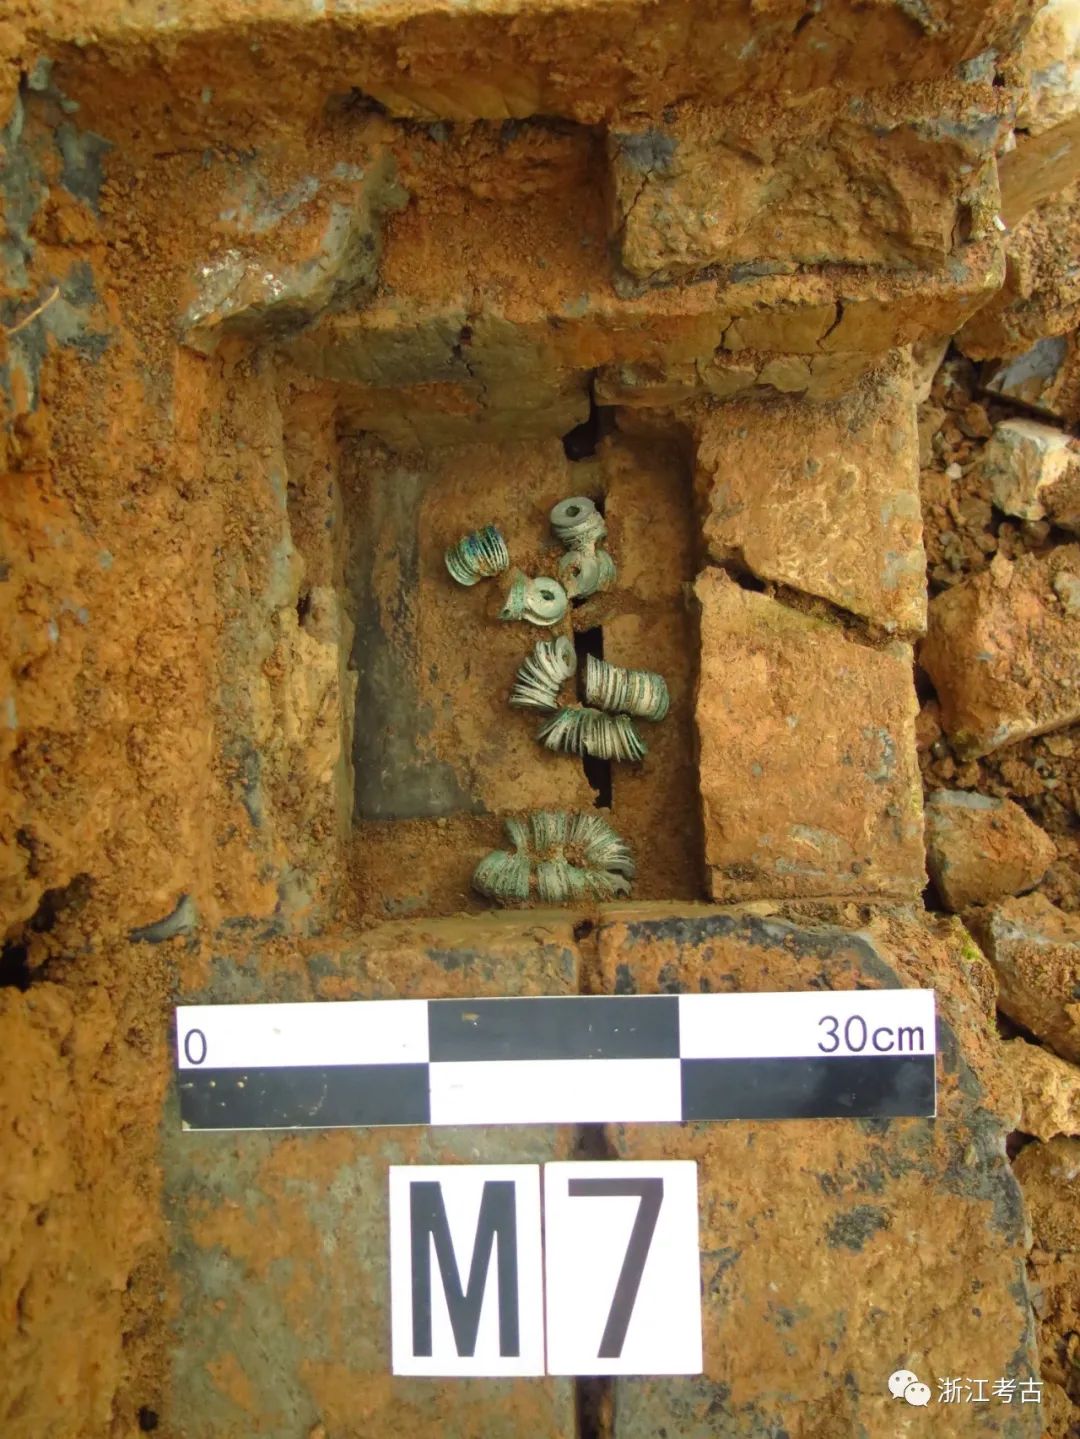 M7墓壁放置的铜钱